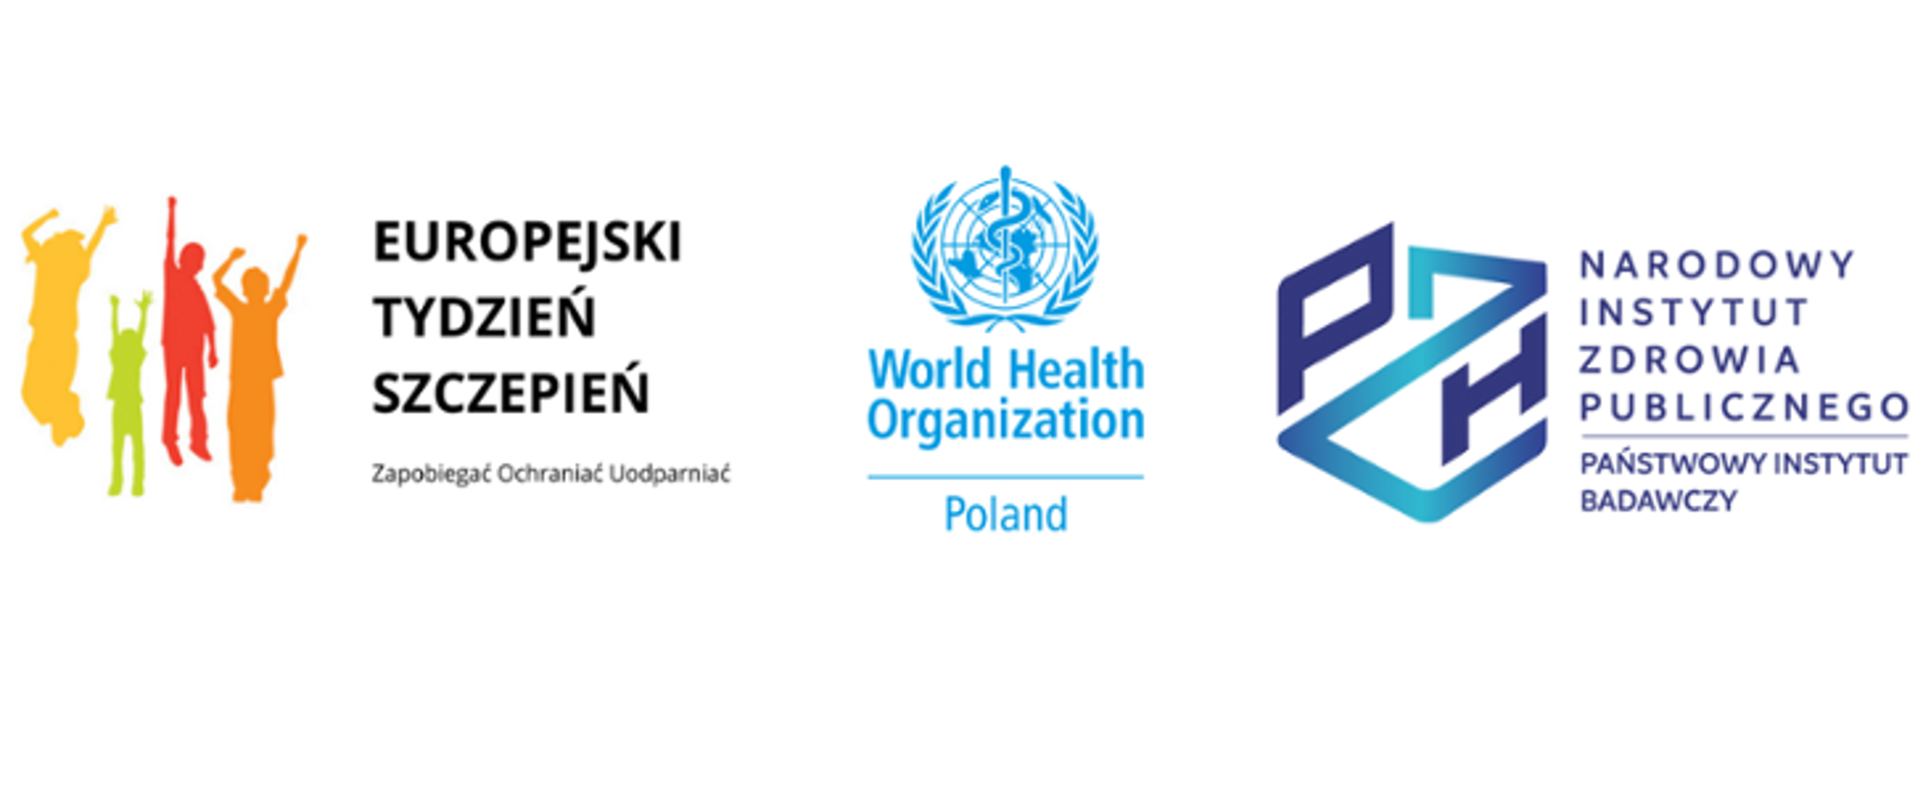 Hasło Europejskiego Tygodnia Szczepień - Zapobiegać Ochraniać Uodparniać. Grafika przedstawia logo WHO, NIZP-PIB 